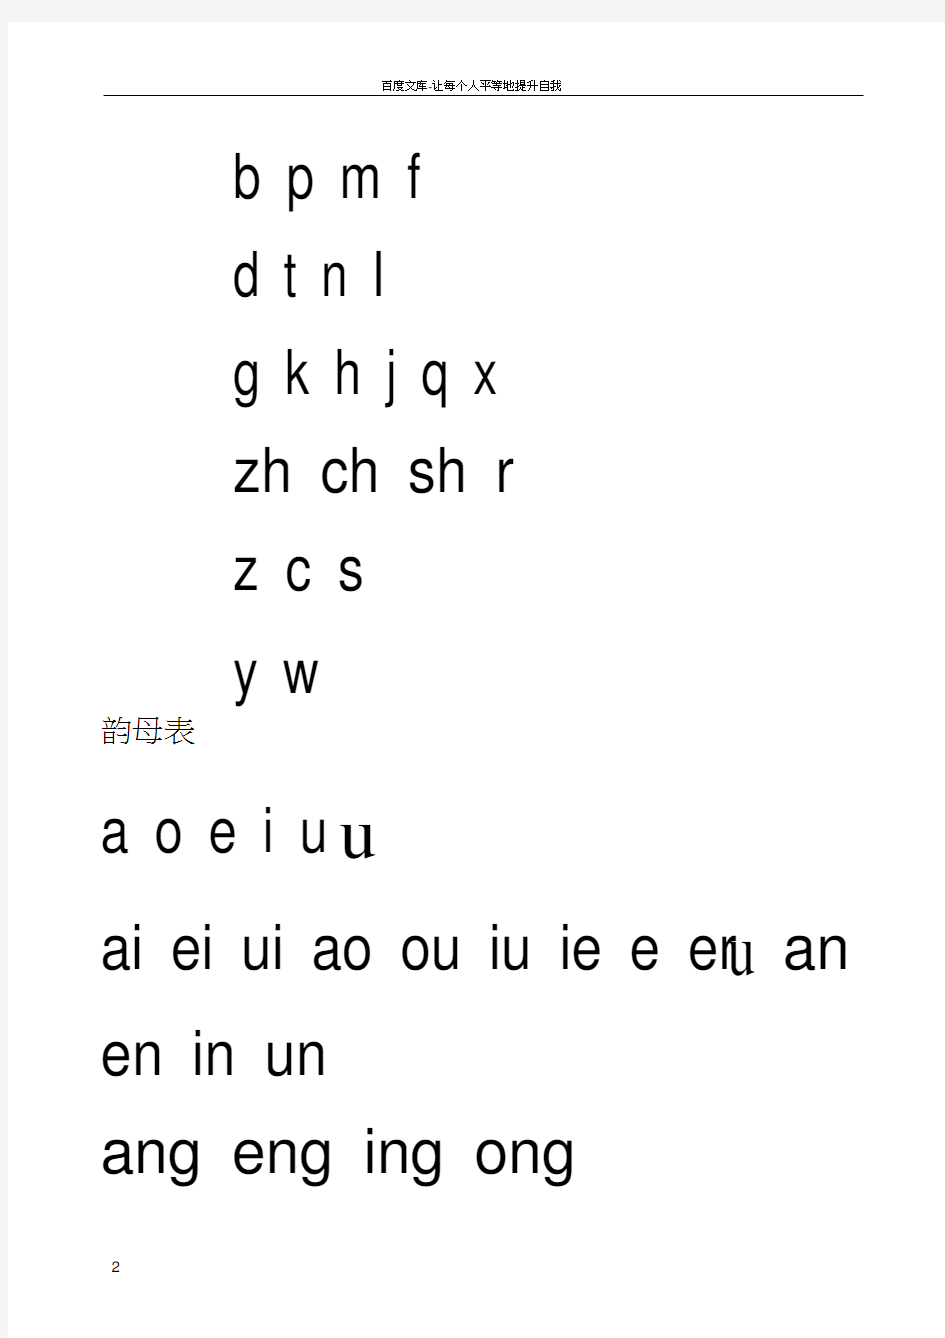 汉语拼音字母表完整版可A4打印